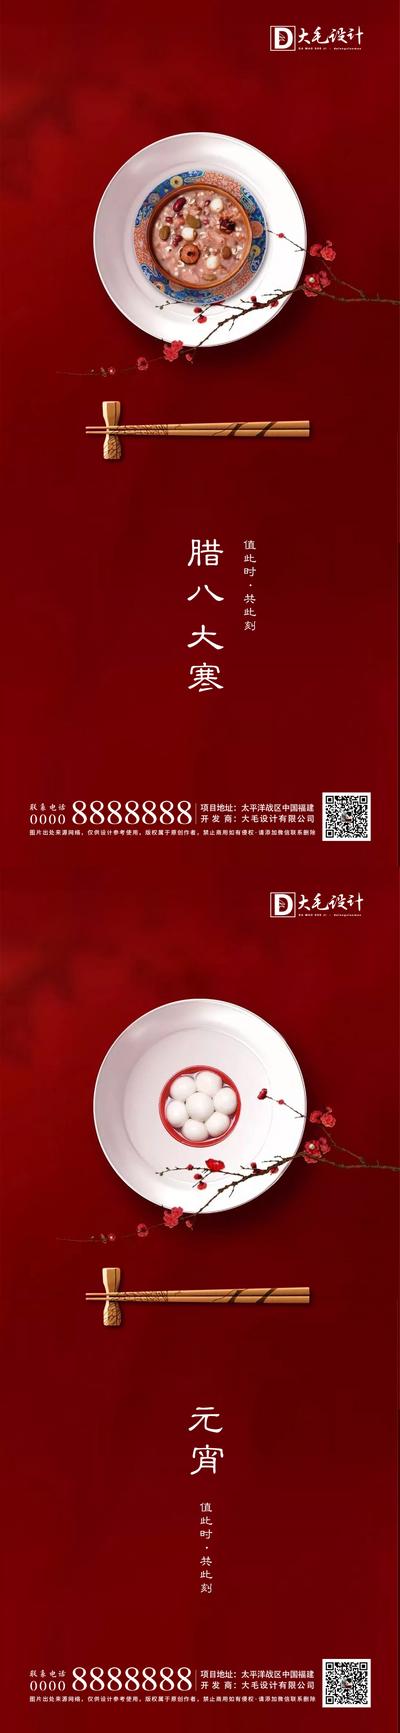 南门网 海报  中国传统节日 二十四节气  腊八节  元宵节 大寒 红色 汤圆